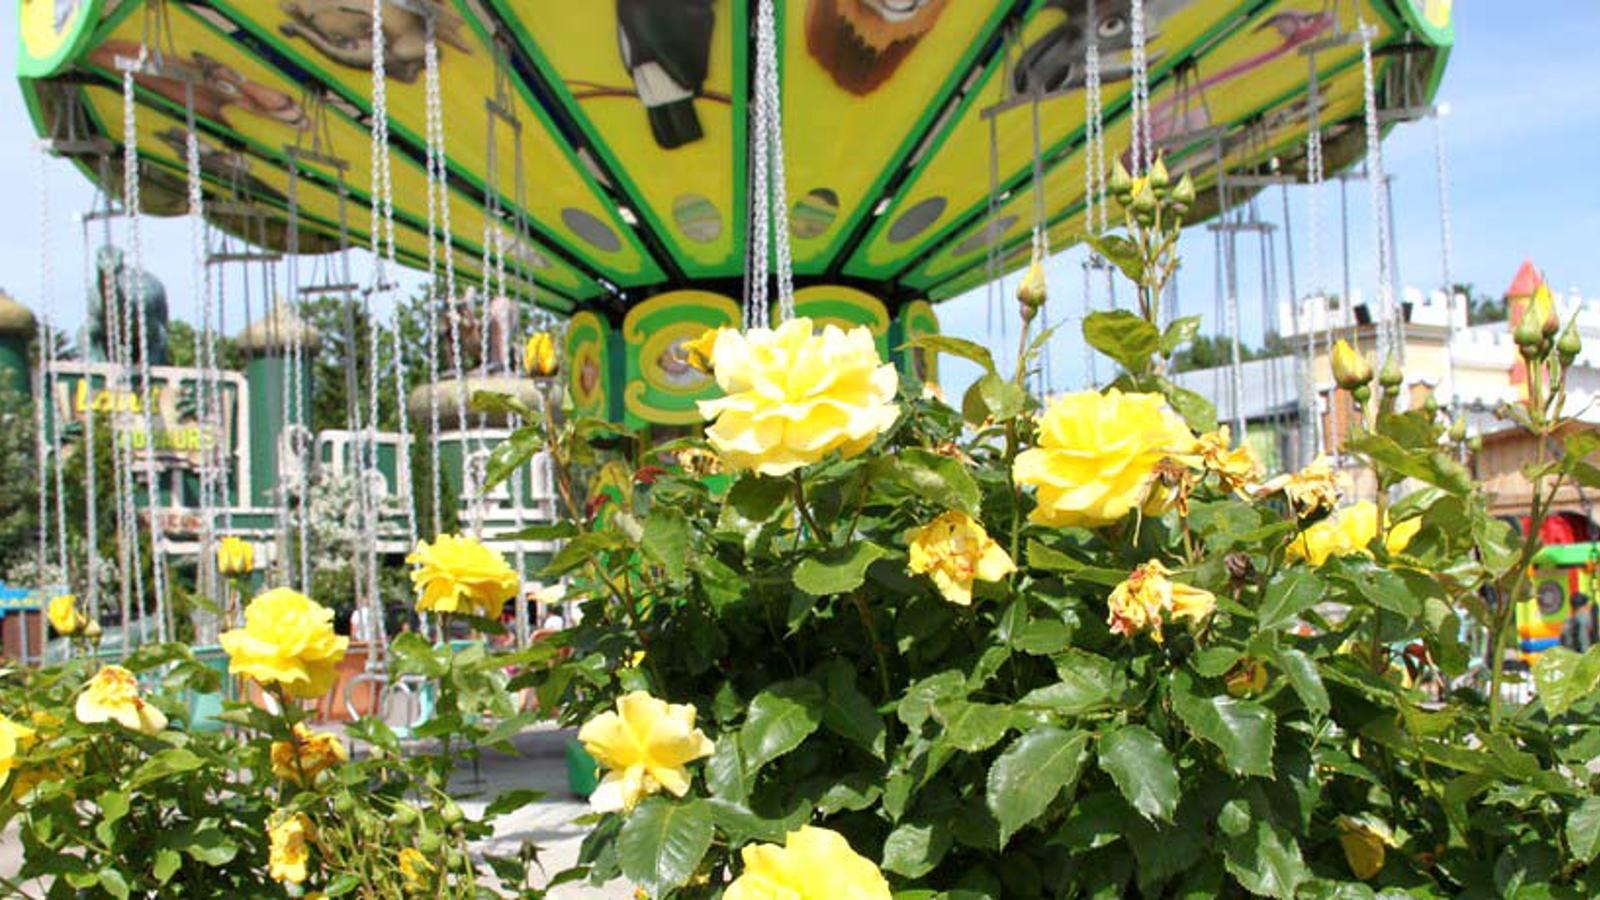 En stor buske med gula blommor. I bakgrunden syns ett tivoli.